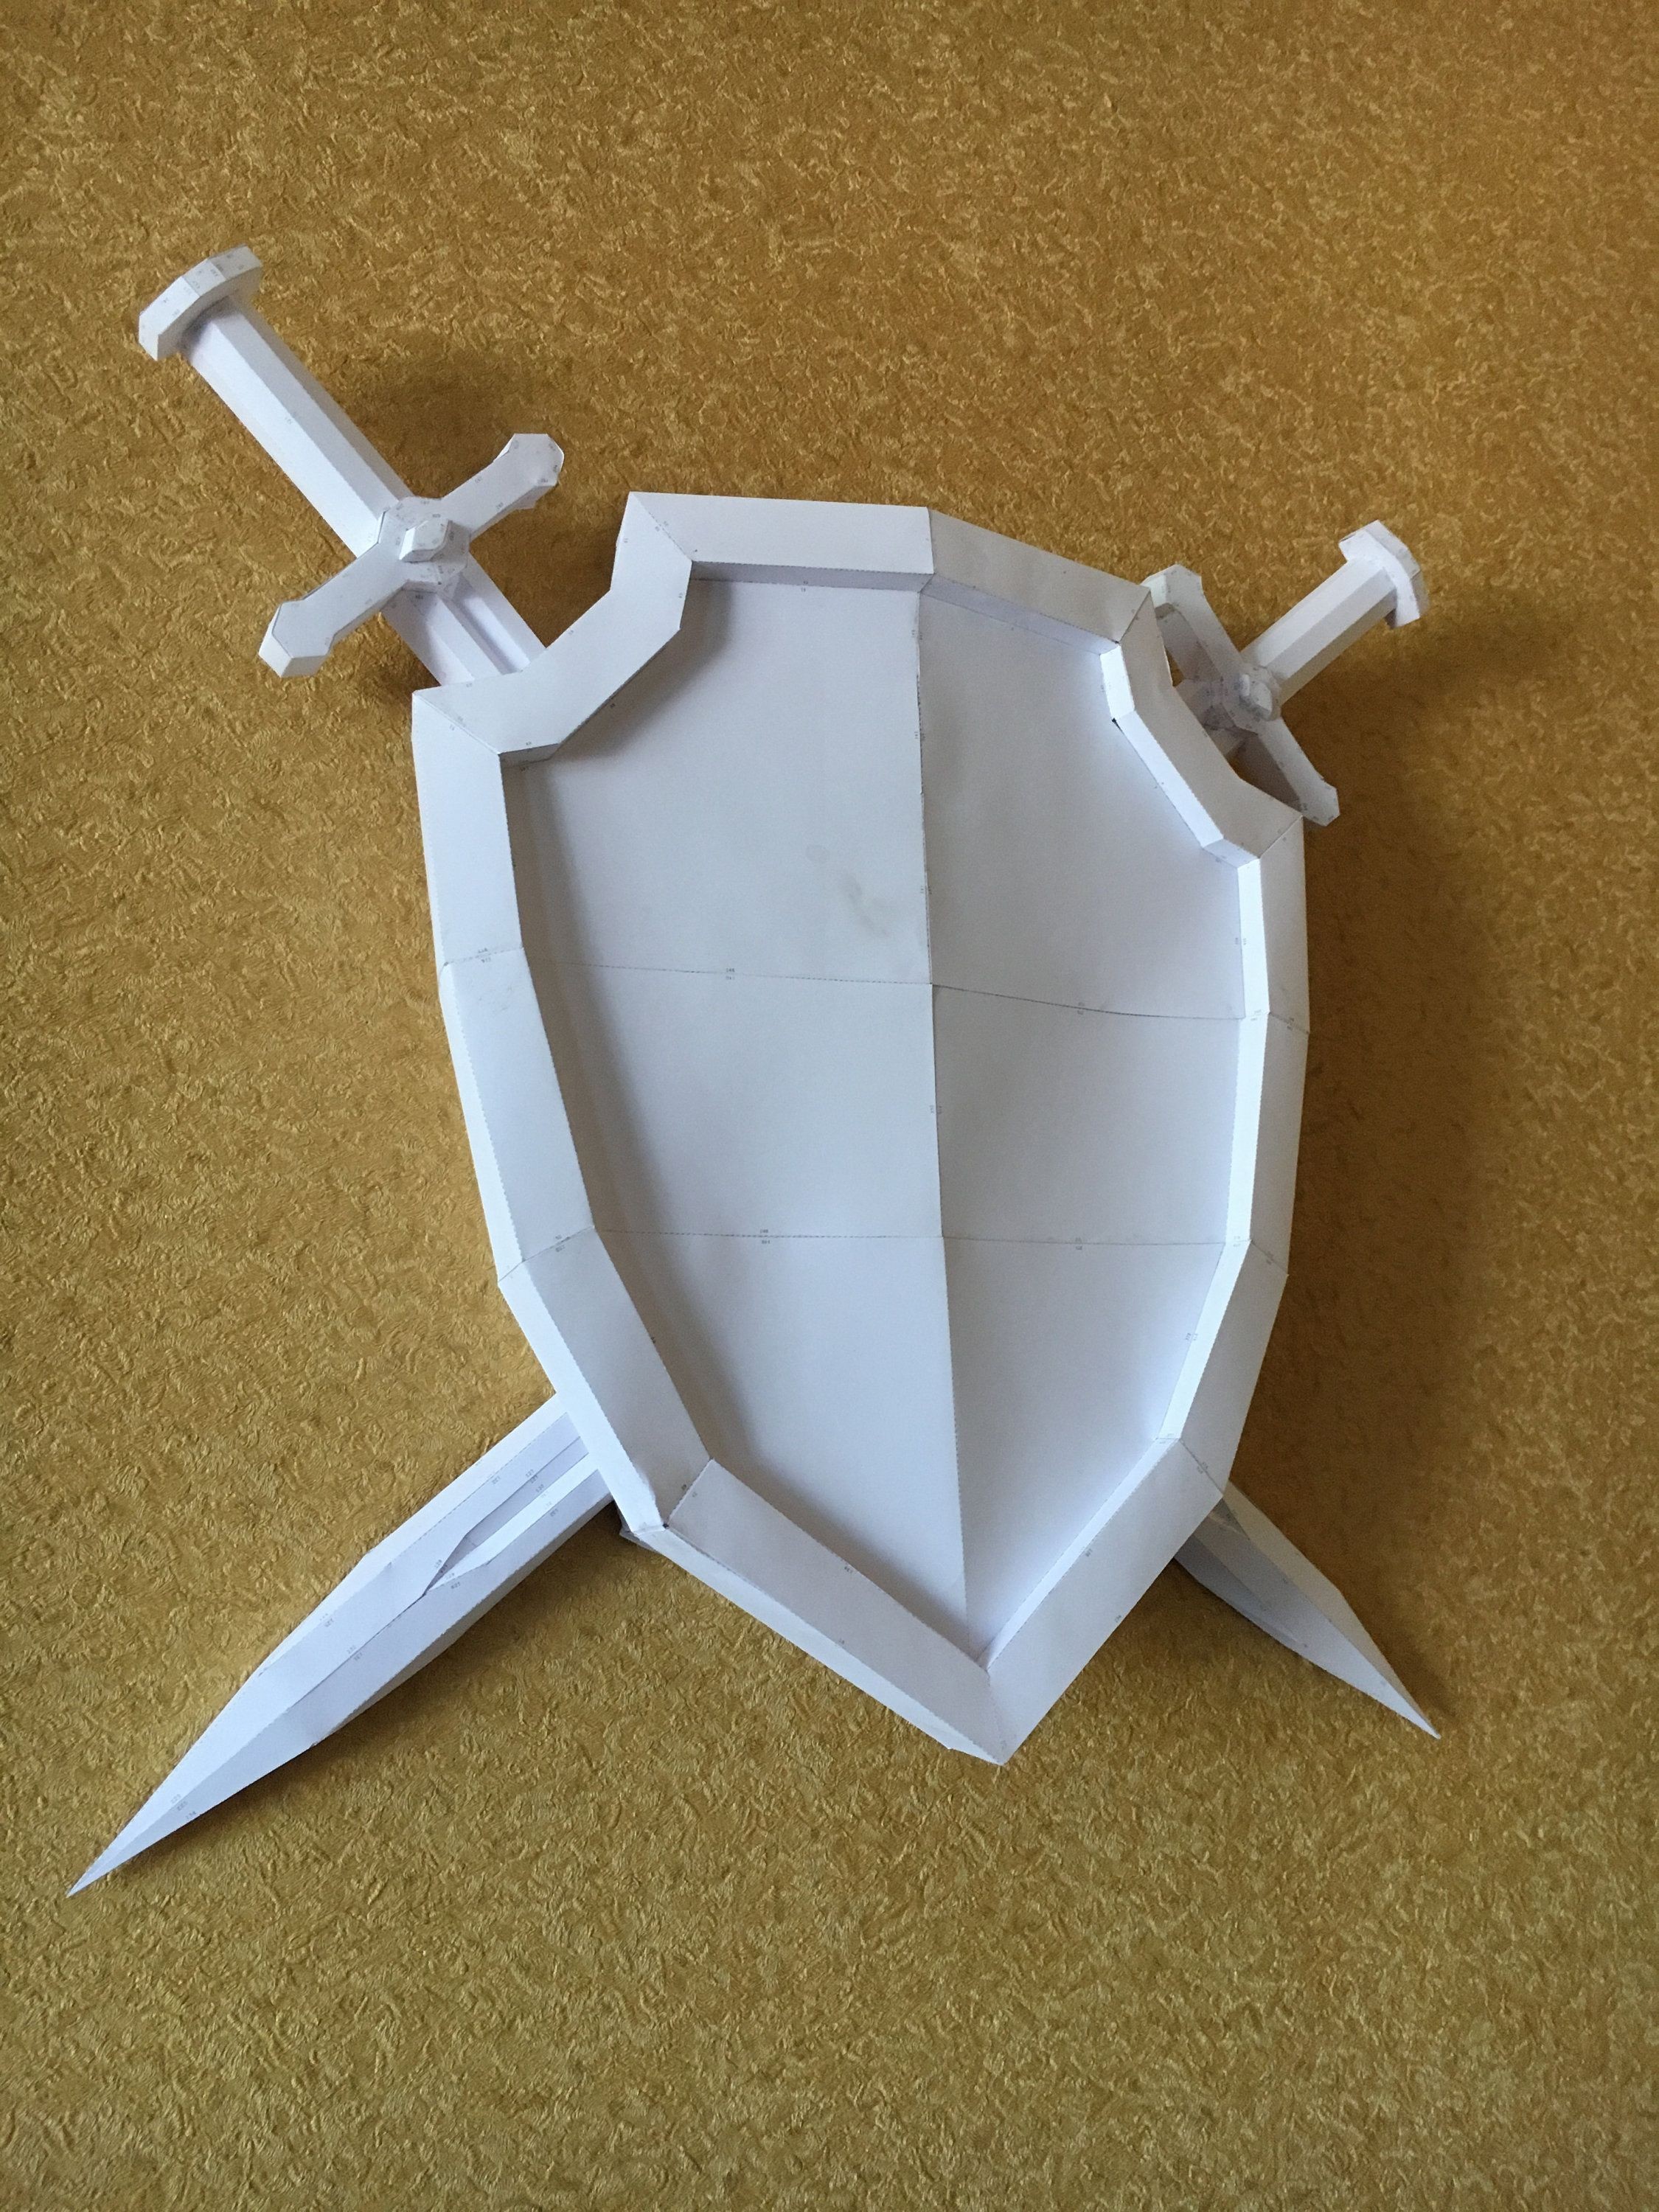 Papercraft Skull Sword Shield Diy Papercraft Model ÐÑÐ¼Ð°Ð¶Ð½ÑÐµ Ð¸Ð·Ð´ÐµÐ Ð¸Ñ